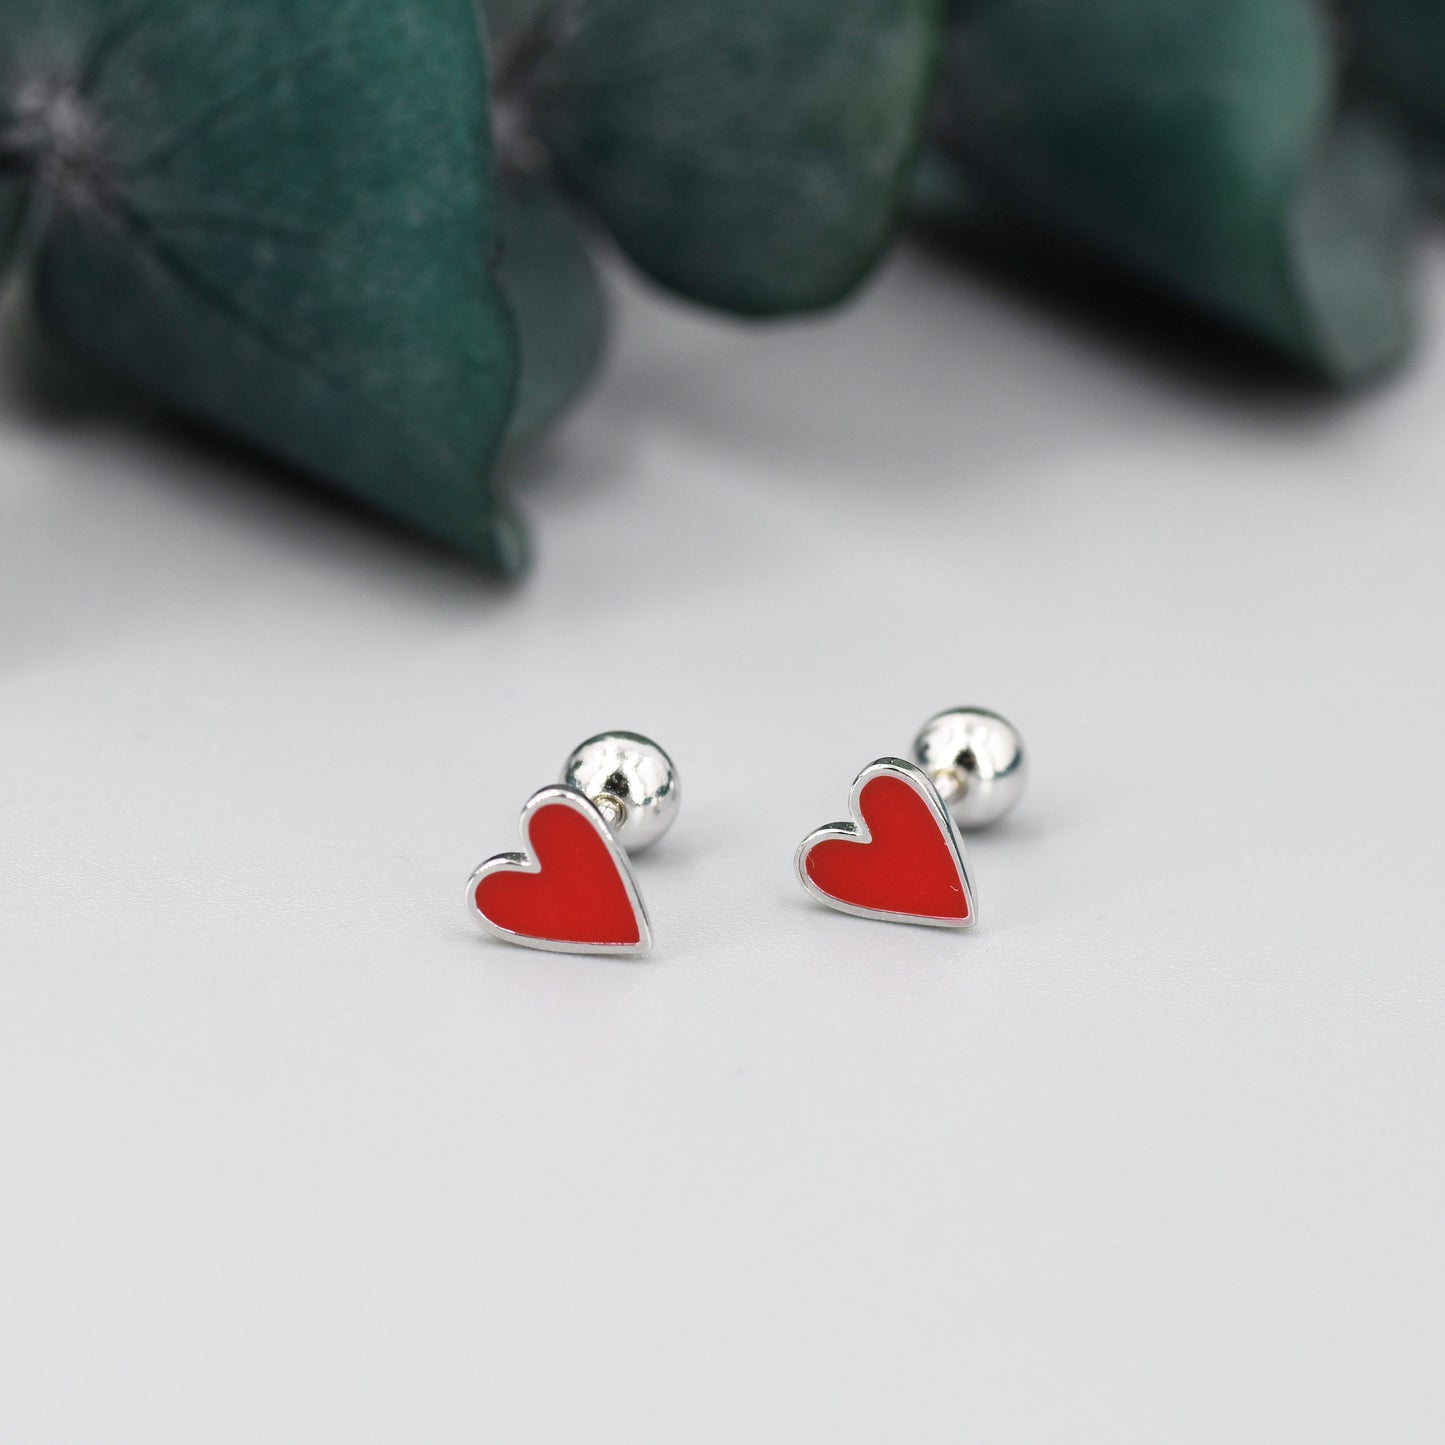 Red Enamel Heart Screwback Earrings in Sterling Silver, Silver or Gold, Delicate Heart Earrings, Heart Barbell Earrings, Screw Back